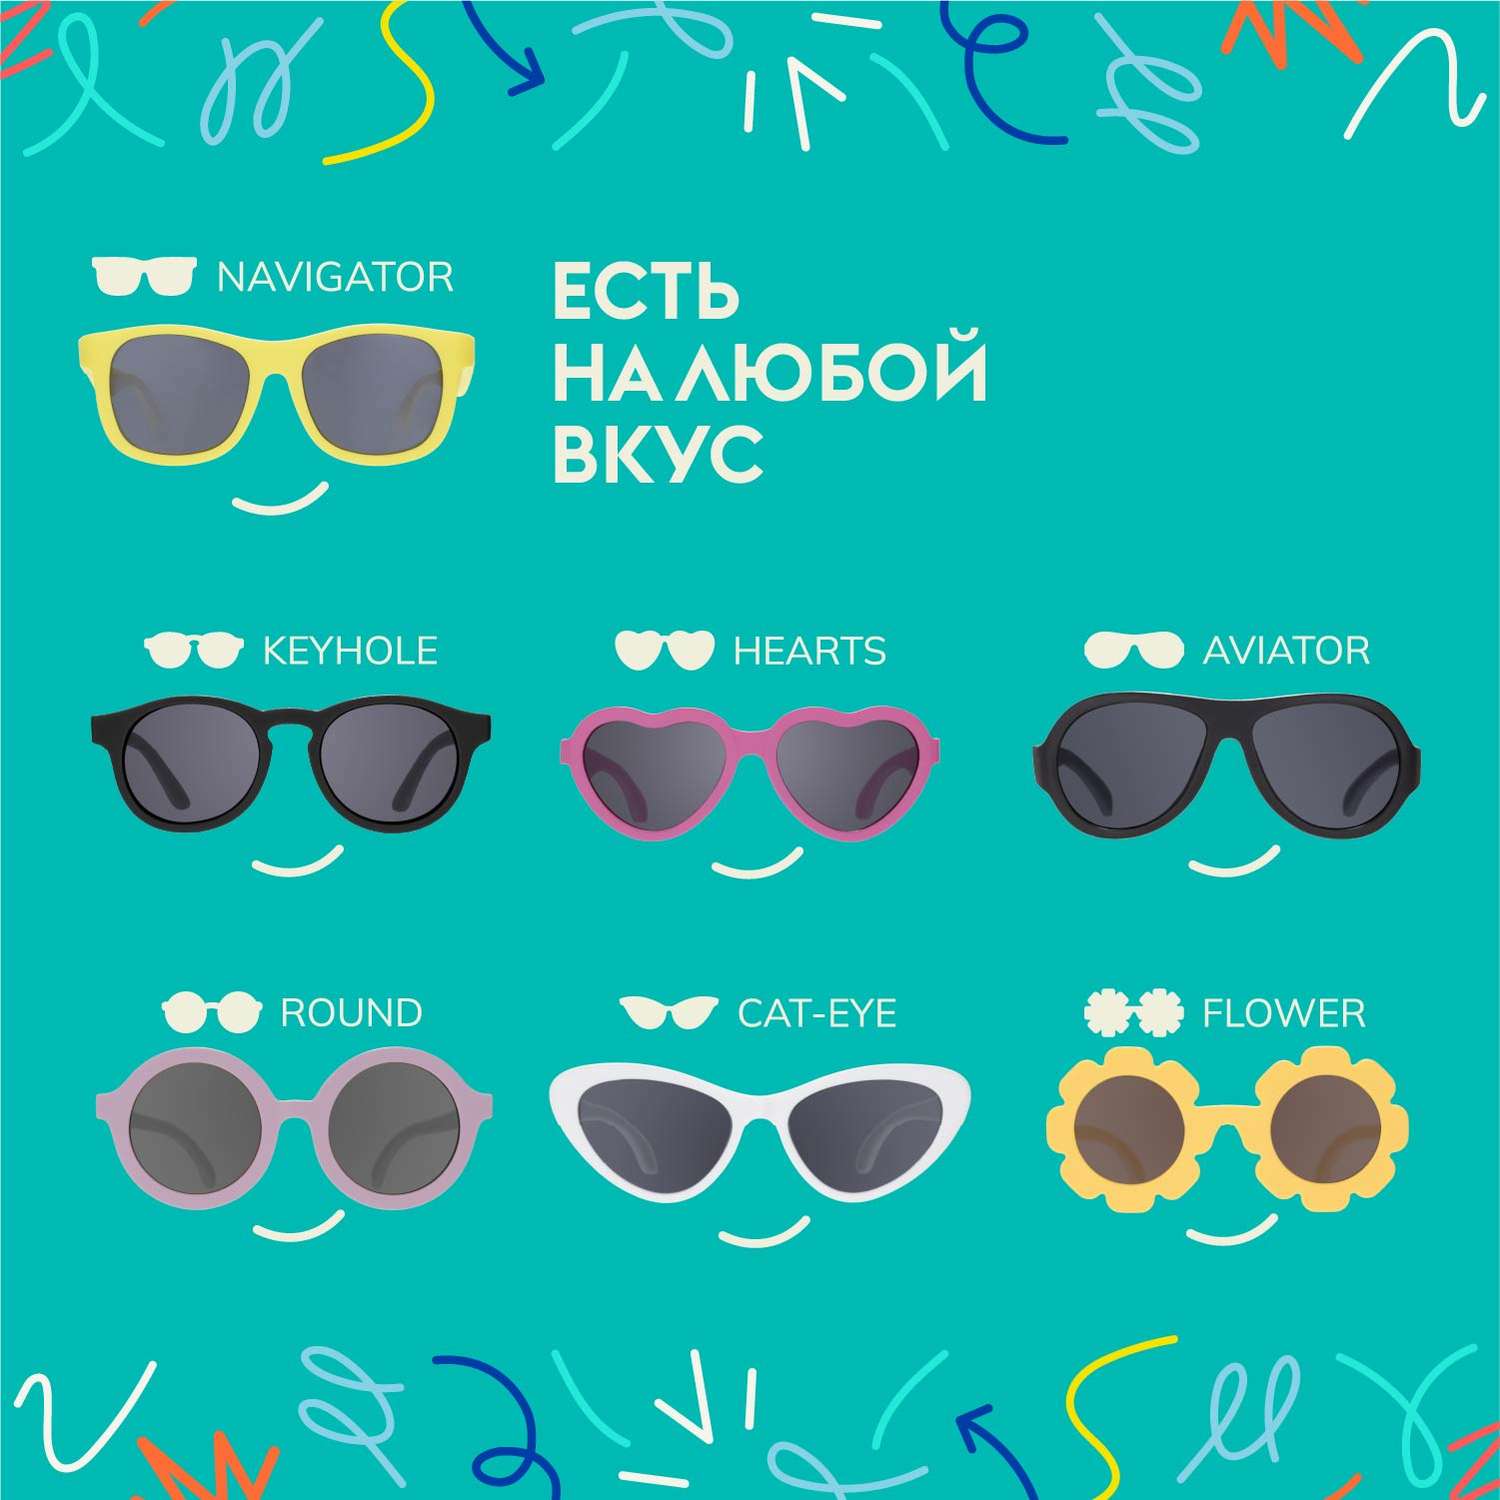 Солнцезащитные очки 0-2 Babiators NAV-046 - фото 6